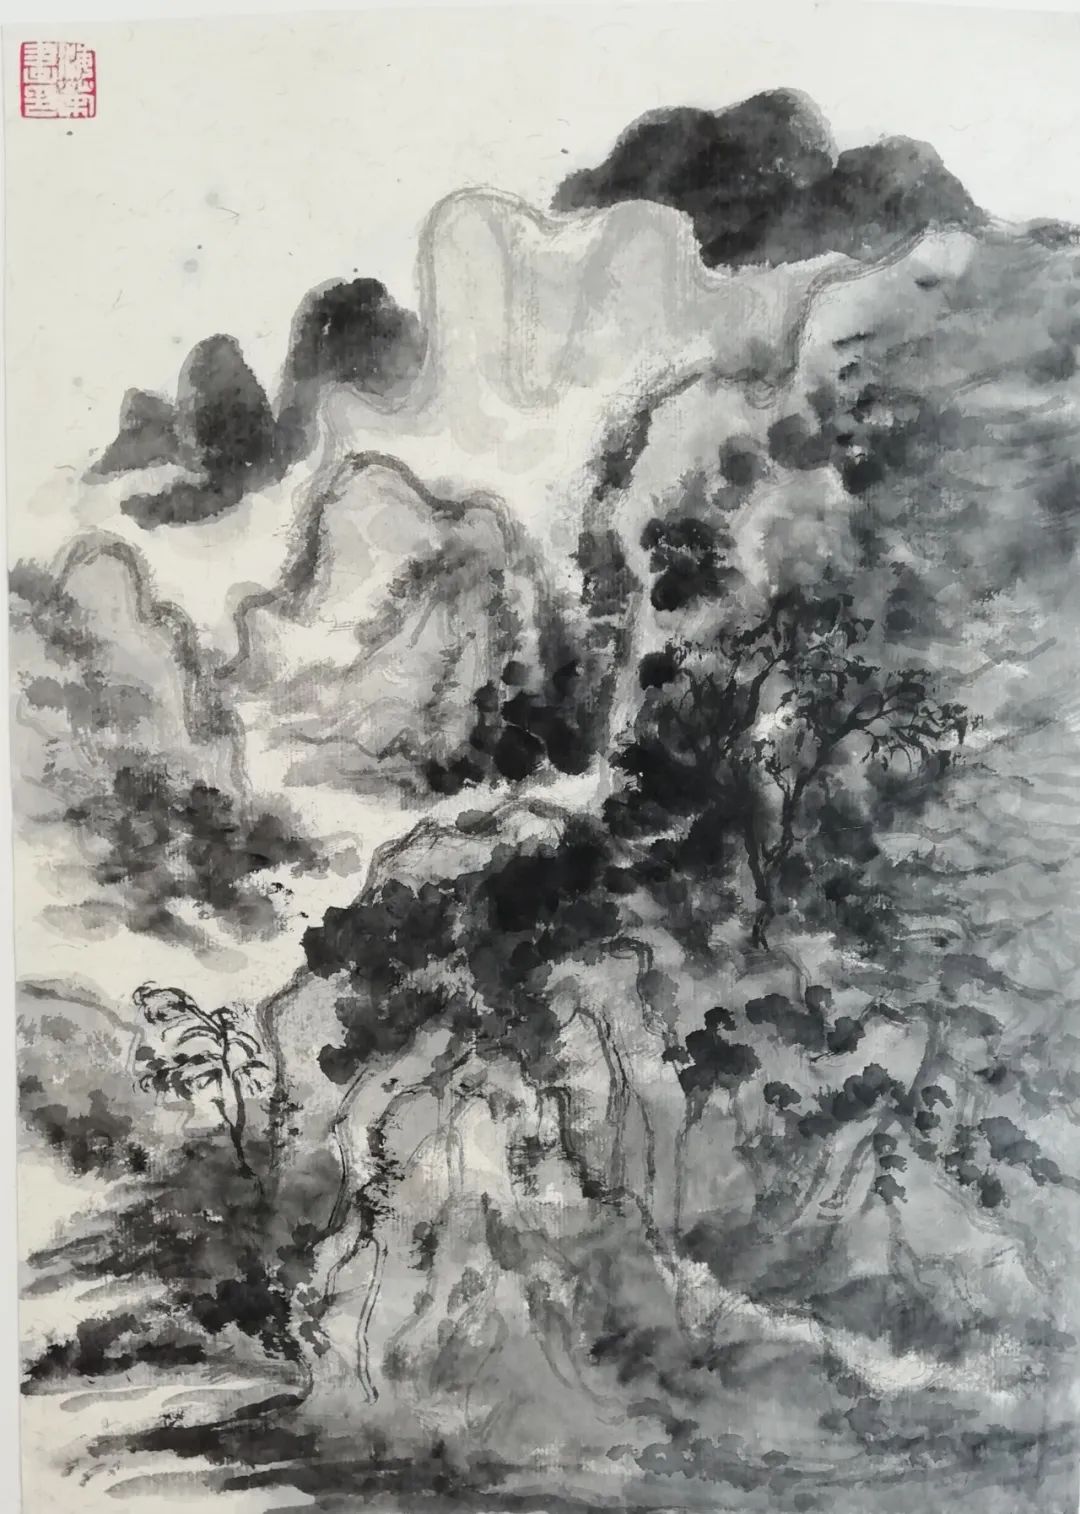 文化是根基·笔墨随时代一画家任海荣与学者徐勇探讨中国山水画